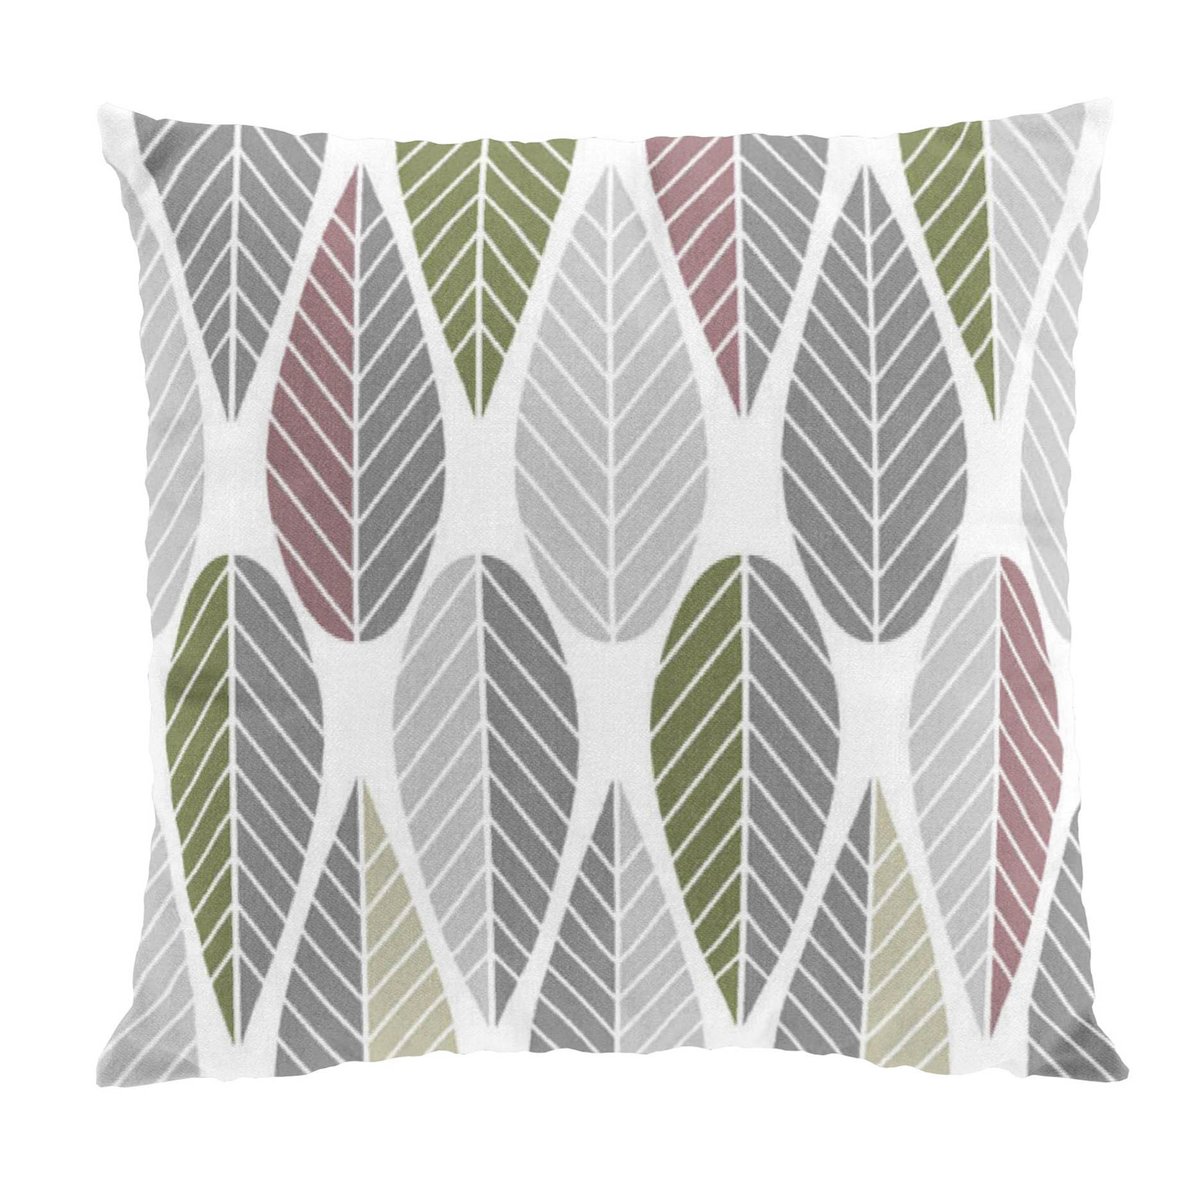 Arvidssons Textil Blader tyynynpäällinen vaaleanpunainen-harmaa-vihreä